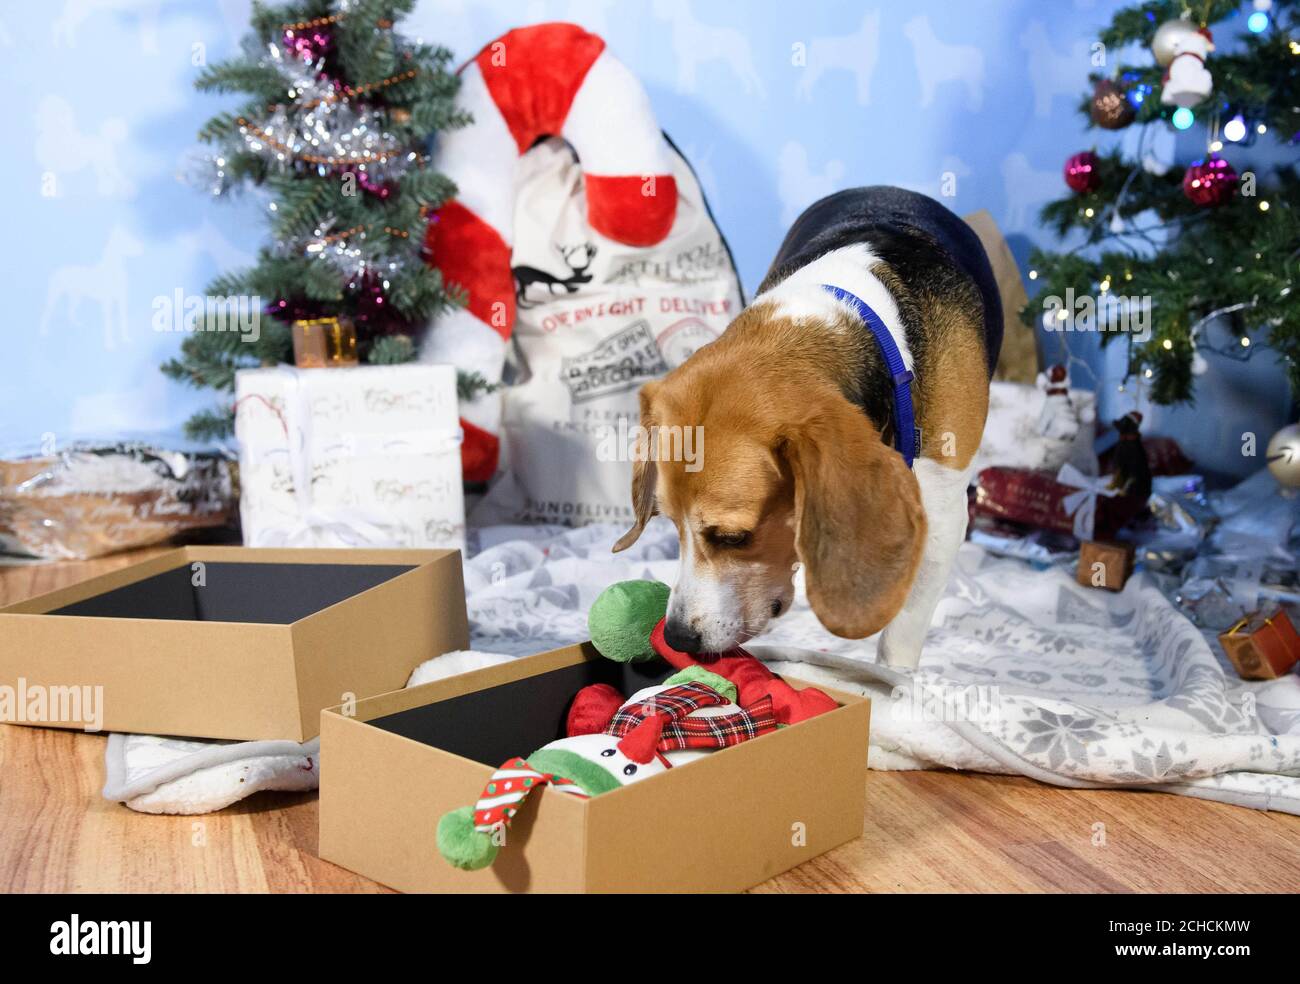 EMBARGOED TO 0001 FREITAG DEZEMBER 15 REDAKTIONELLE VERWENDUNG NUR Darcy, im Alter von 4 Jahren, ein geretteter Beagle Hund, Erhält ein Begrüßungsgeschenk im Battersea Dogs & Cats Home in London vom Amazon Christmas Store, da der Online-Händler sich mit der Wohltätigkeitsorganisation zusammenarbeitet, um seinen Bewohnern die meistverkauften Weihnachtsgeschenke für Haustiere zu liefern. DRÜCKEN SIE ZUORDNUNG. Foto. Ausgabedatum: 15. Dezember 2017. Amazon Verkäufe zeigen, dass drei Viertel aller Haustier Geschenke in diesem Jahr für Hunde mit mehr als die Hälfte der Tiere erhalten bis zu drei Geschenke. Nach einer unabhängigen Umfrage im Auftrag von Amazon, der durchschnittliche Betrag für die fa ausgegeben Stockfoto